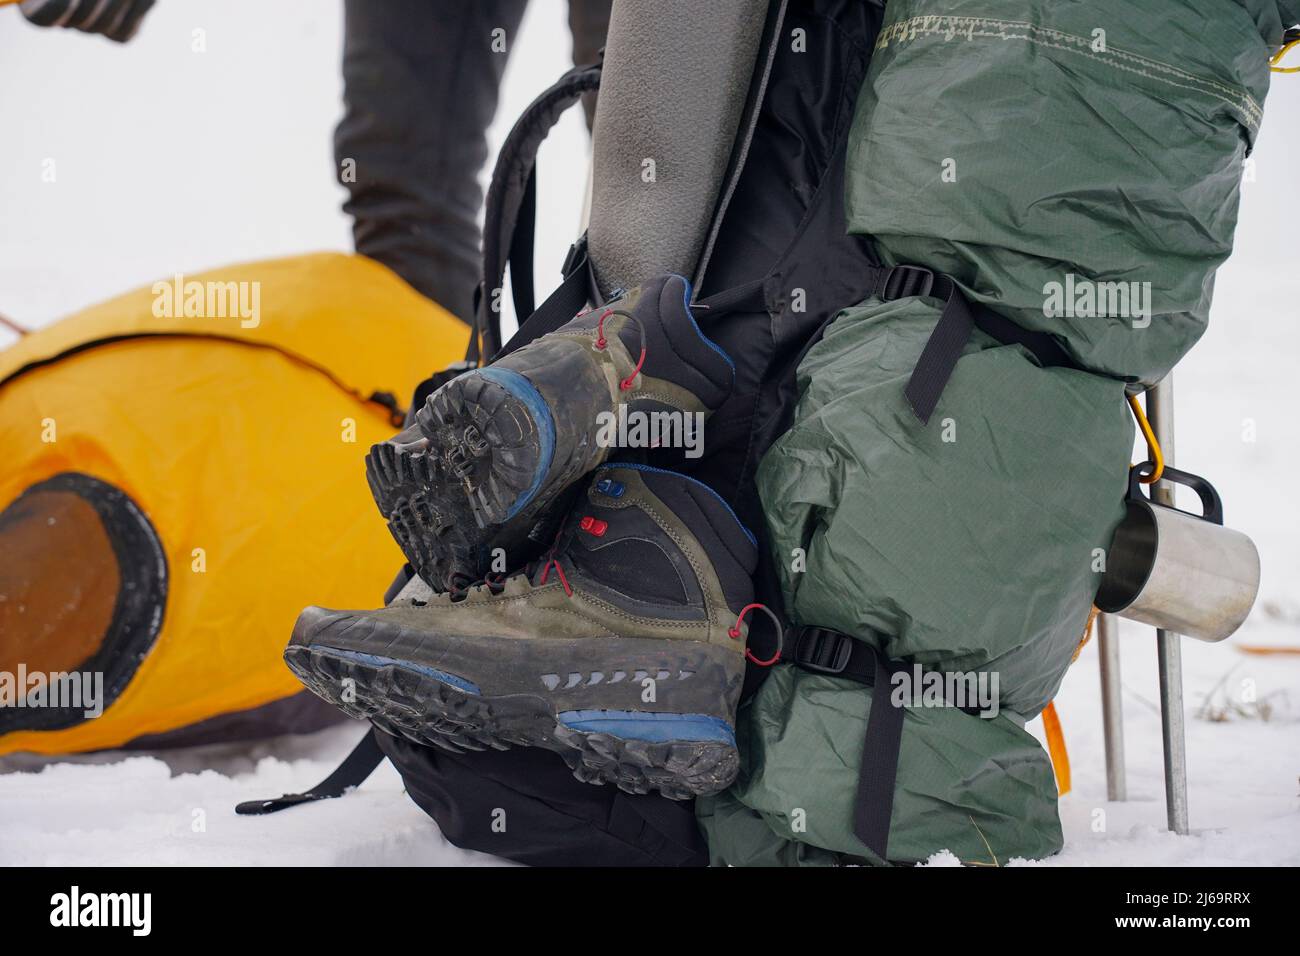 Deux gars mettent une tente dans la neige. Installation d'une tente pendant une expédition d'hiver dans des conditions extrêmes. Trekking en hiver Banque D'Images